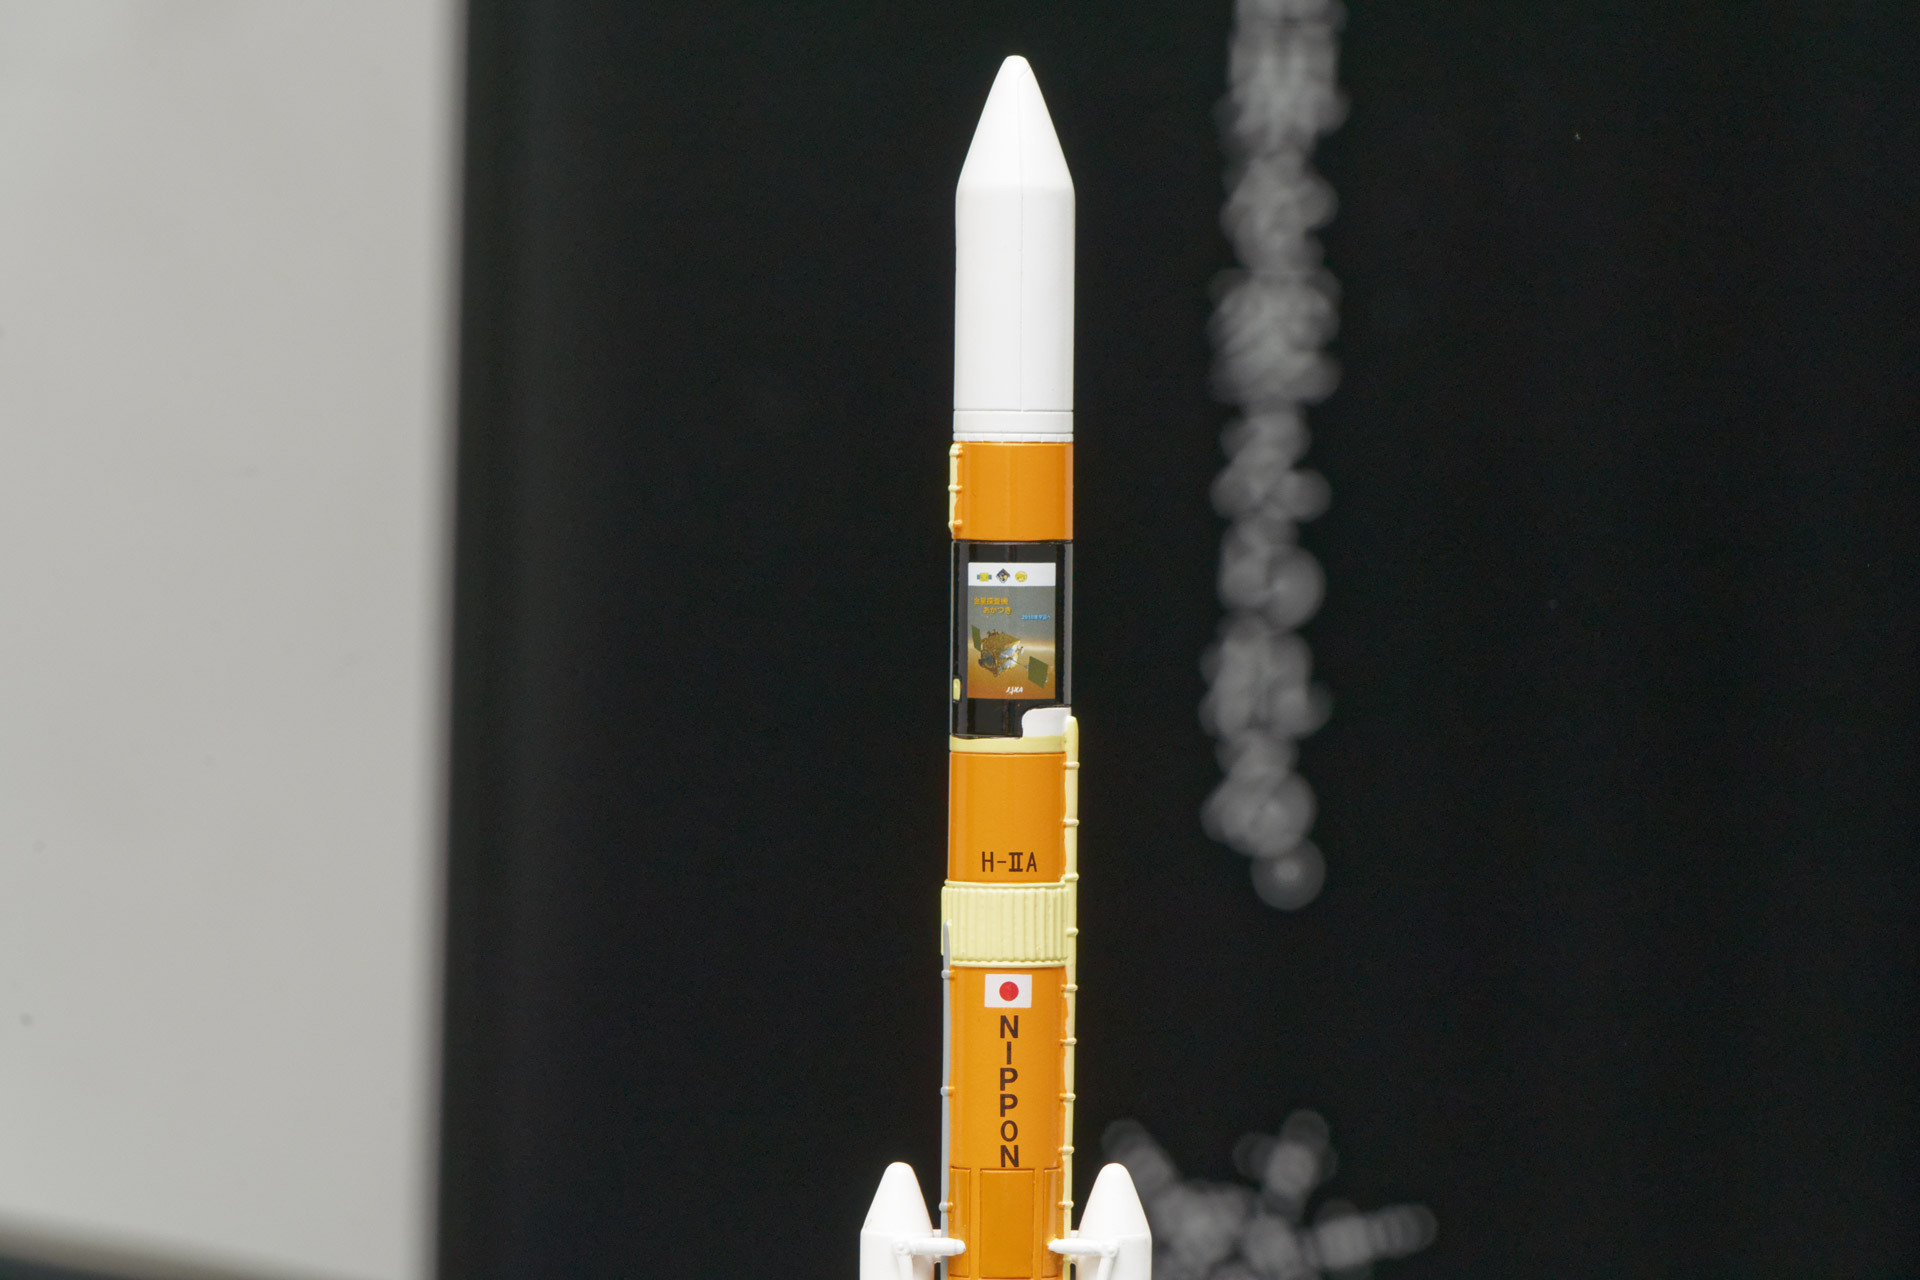 H-IIAロケット段間部にミッションロゴなどでメッセージを込める取り組みを発案